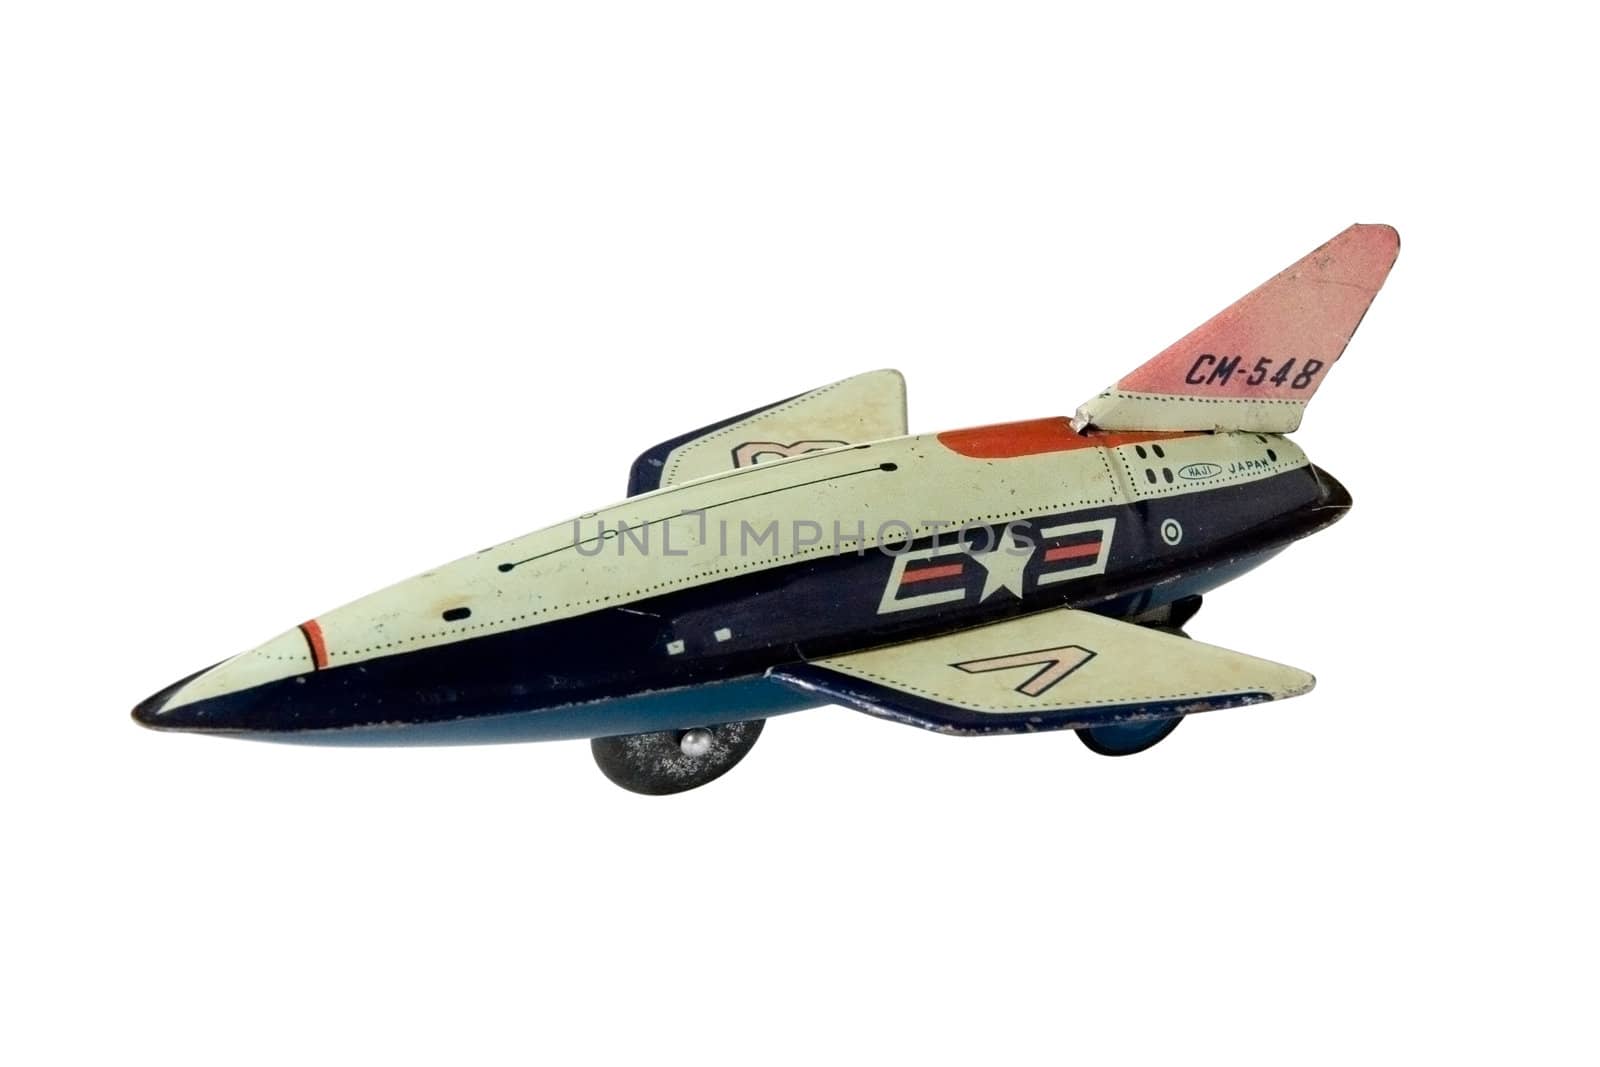 Jet Toy by daboost